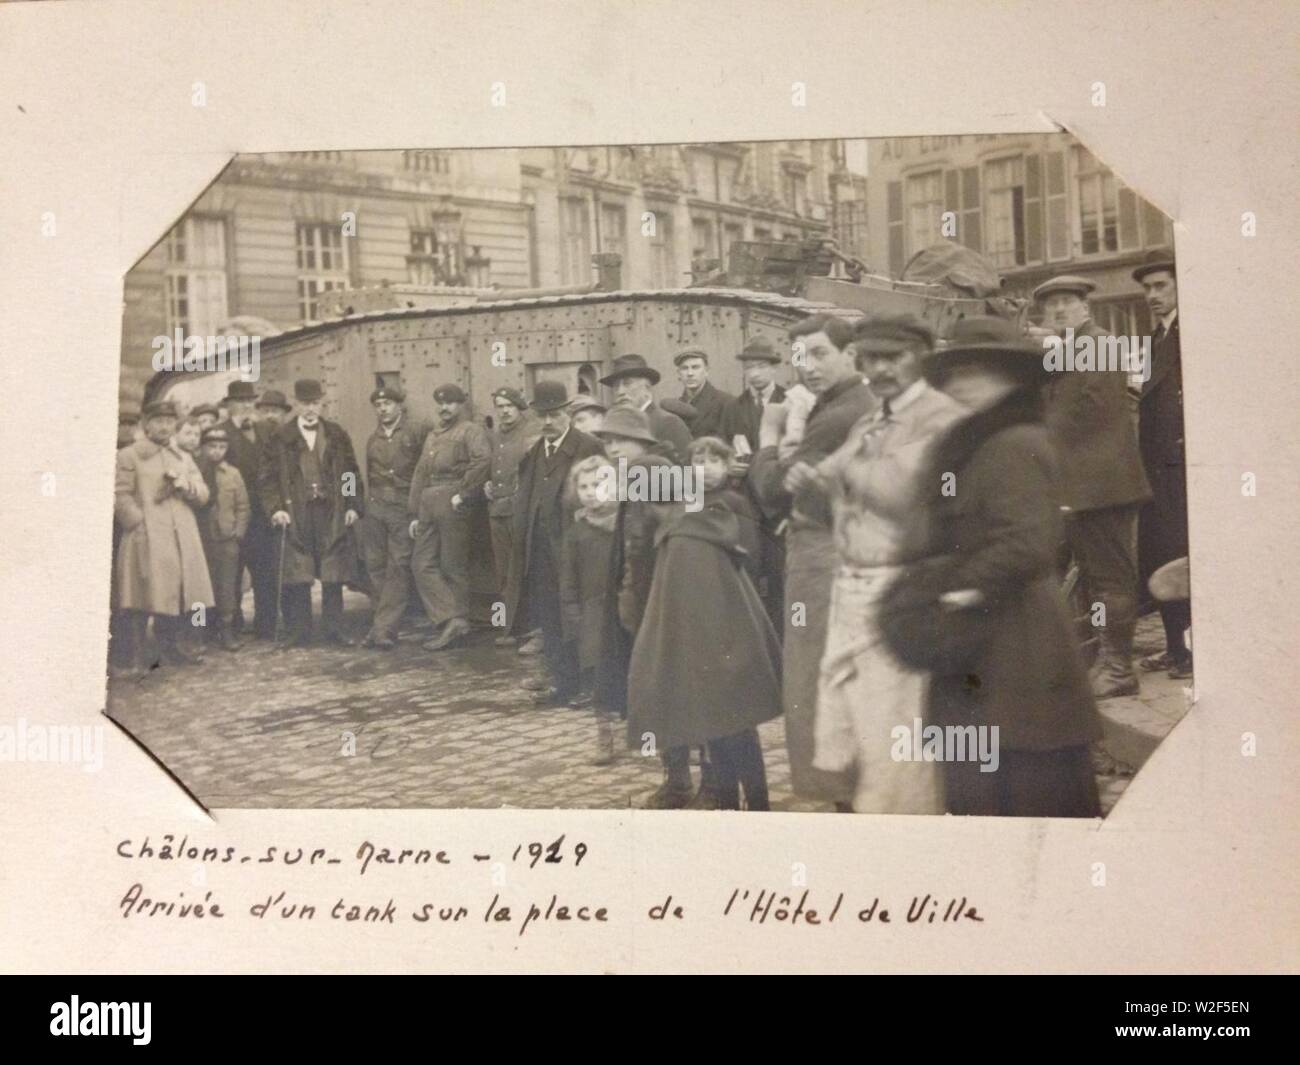 Chalons-sur-marne arrivée d'un tank sur la place de la mairie-1919. Stock Photo